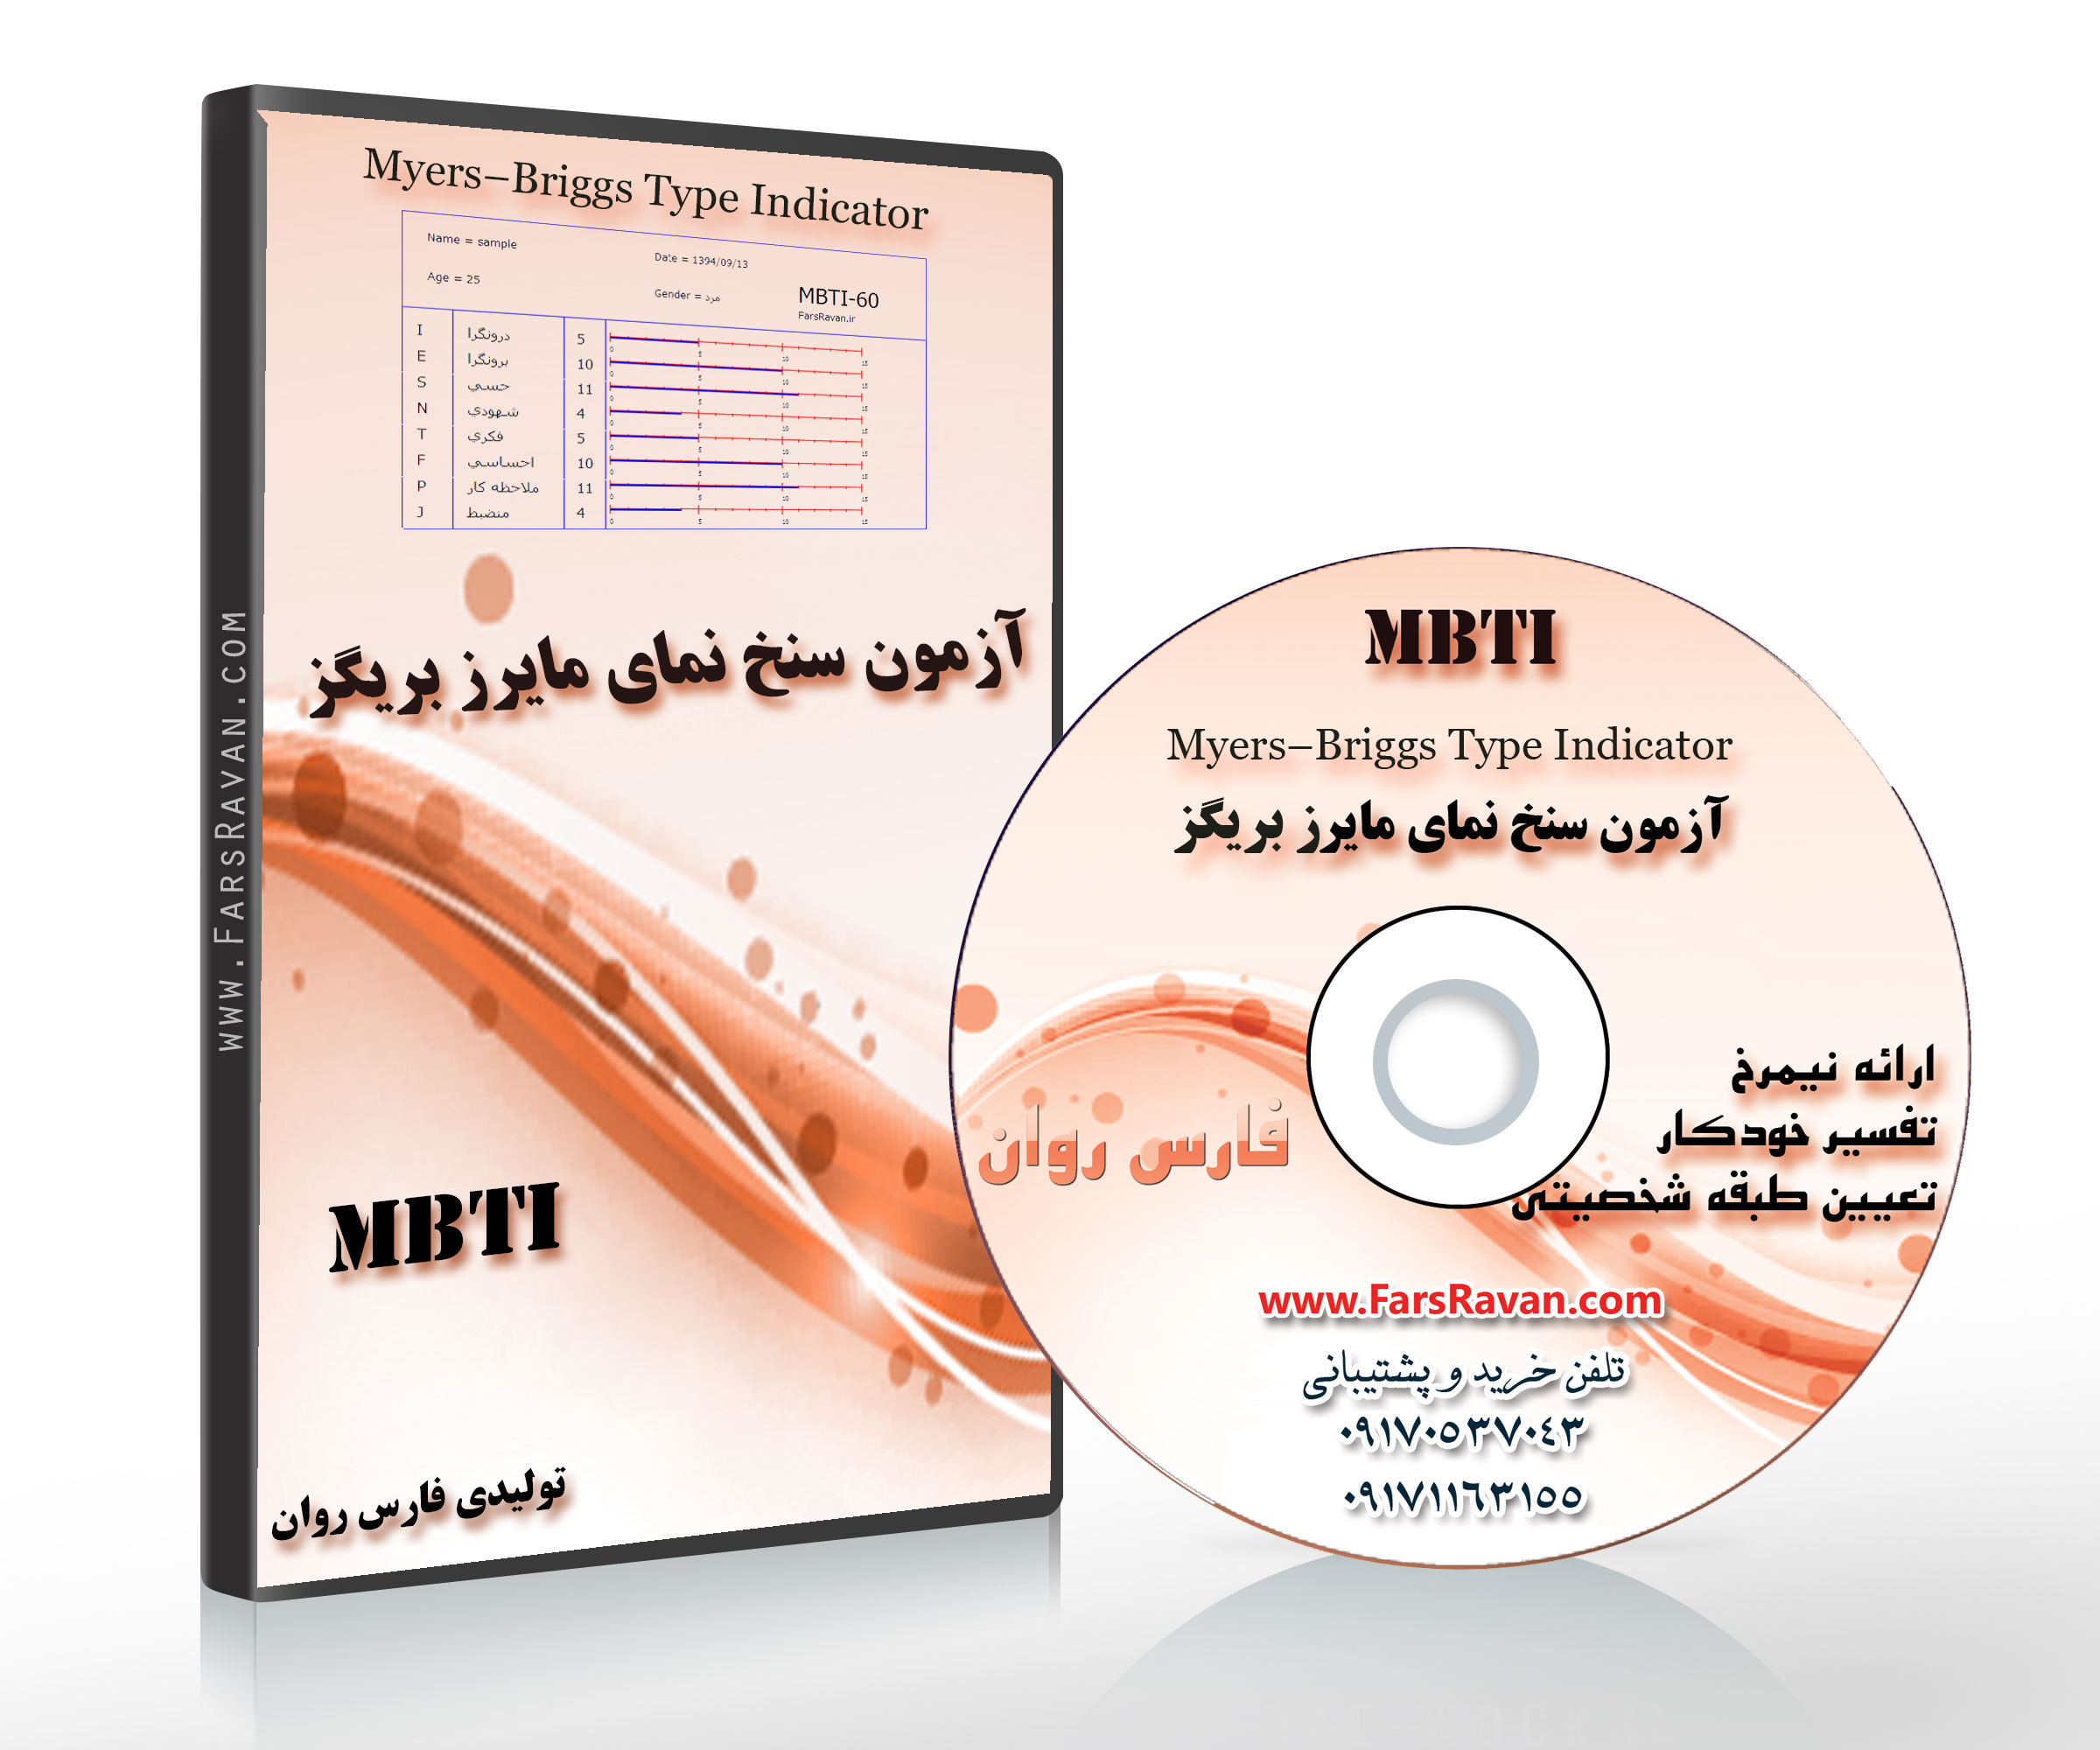 MBTI سنخ نمای مایرز بریگز تولیدی فارس روان